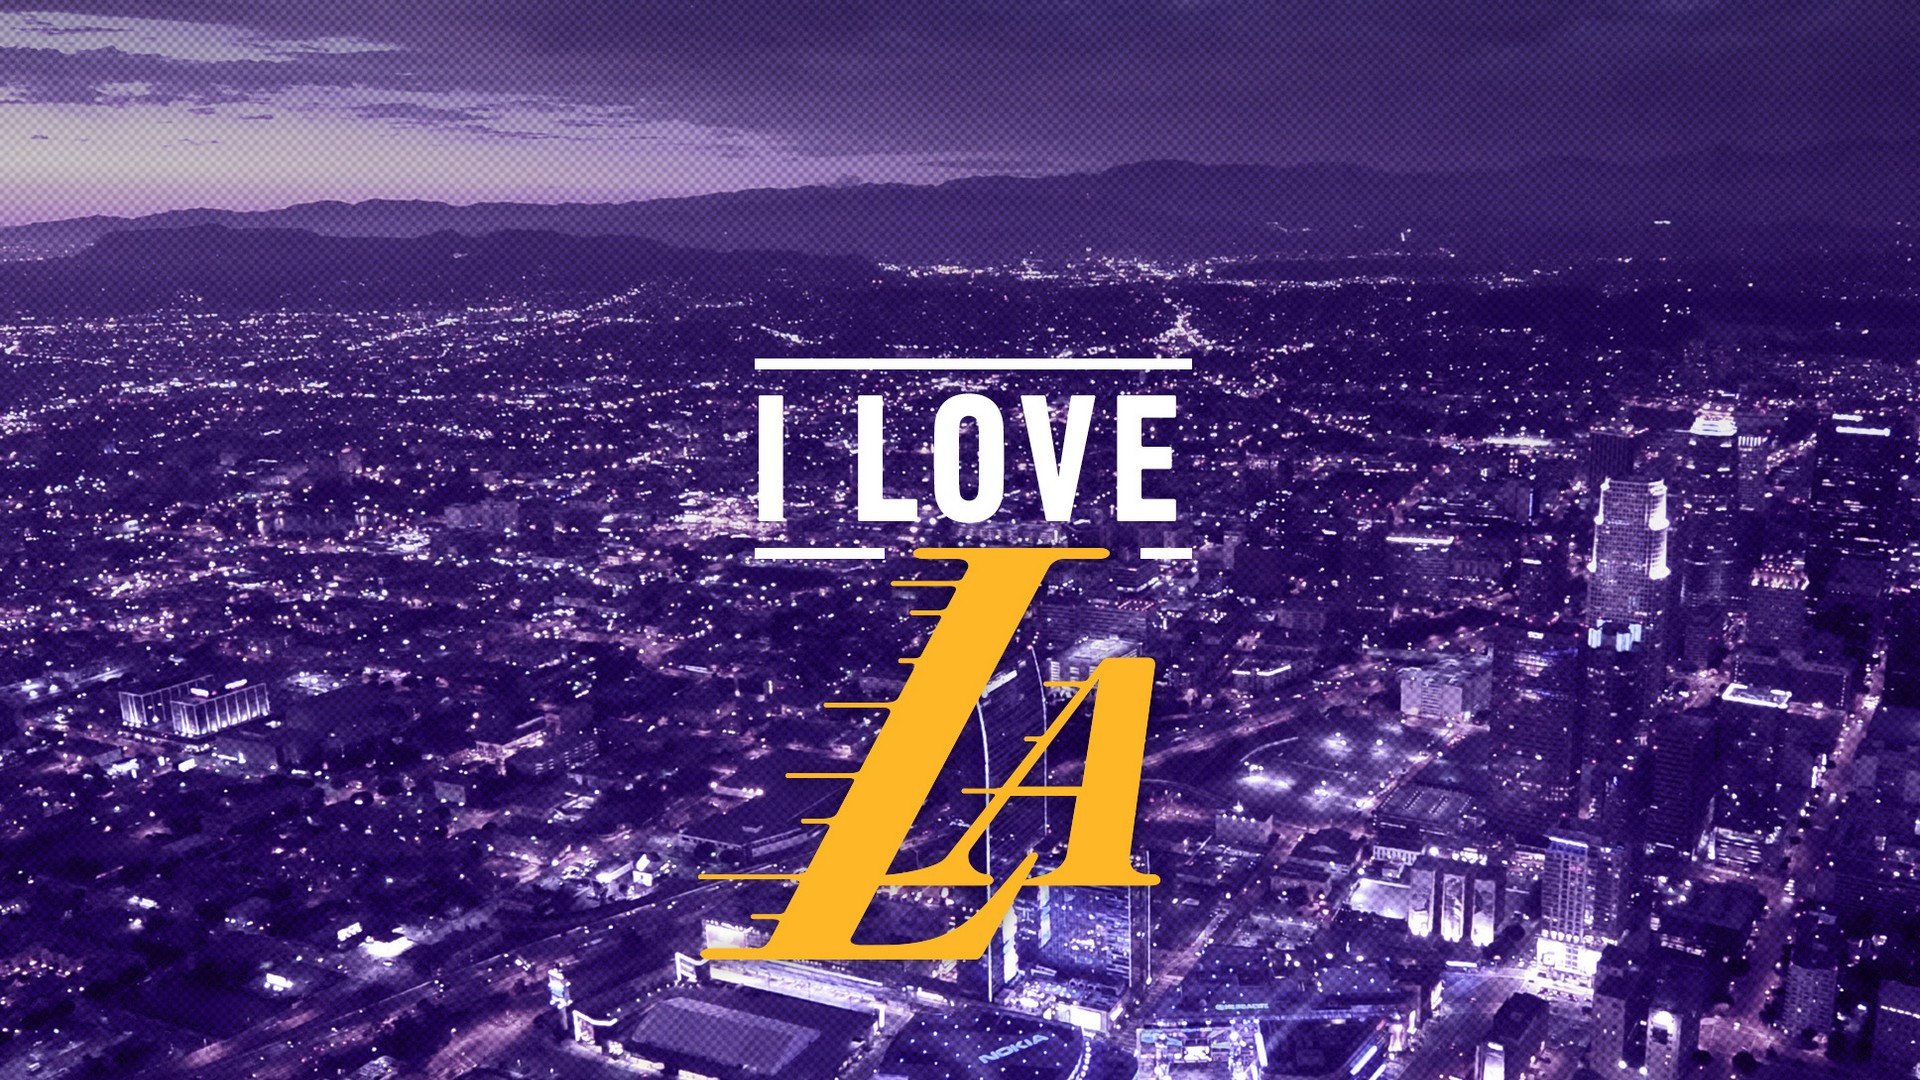 Лост анджелес текст френдли таг. Лос-Анджелес Лейкерс обои. Лос Анджелес 1920х. Lakers обои на рабочий стол. Обои на рабочий стол Лос Анджелес.